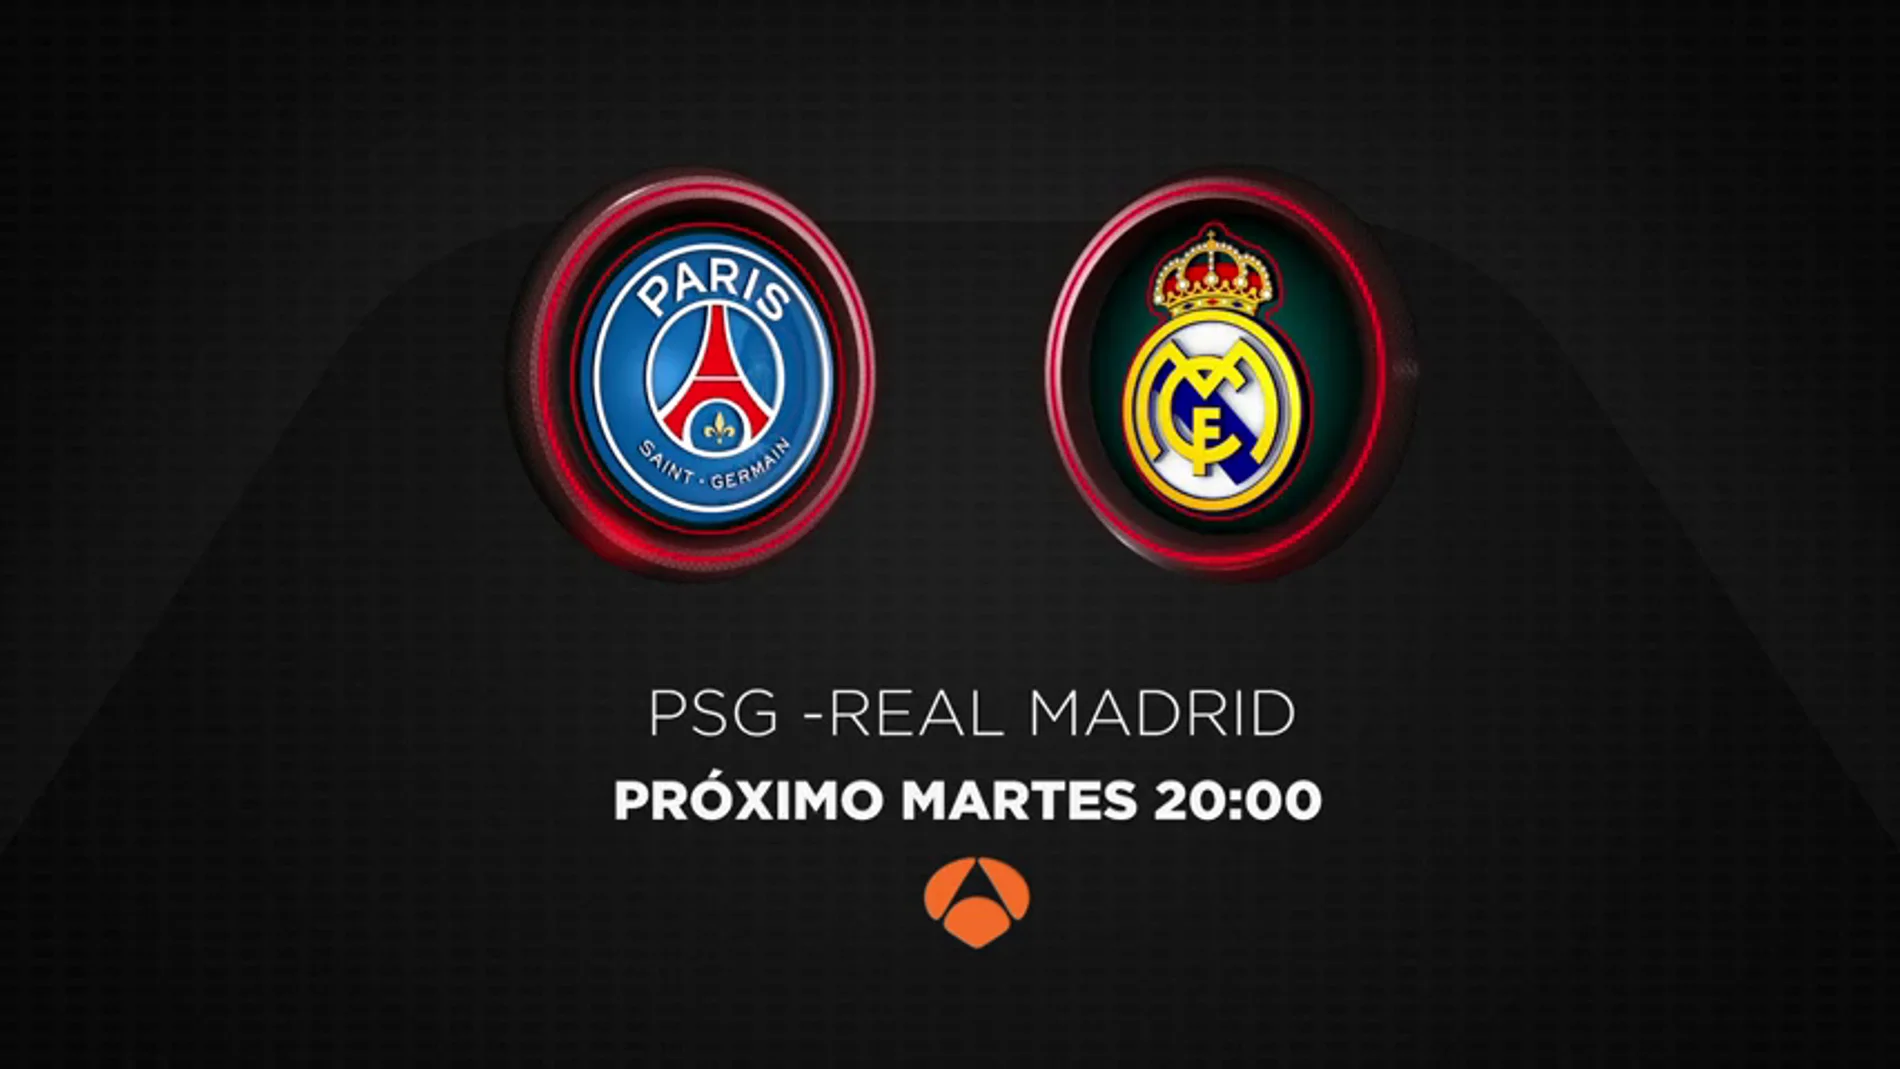 El PSG-Real Madrid se juega en Antena 3 este martes 6 de marzo